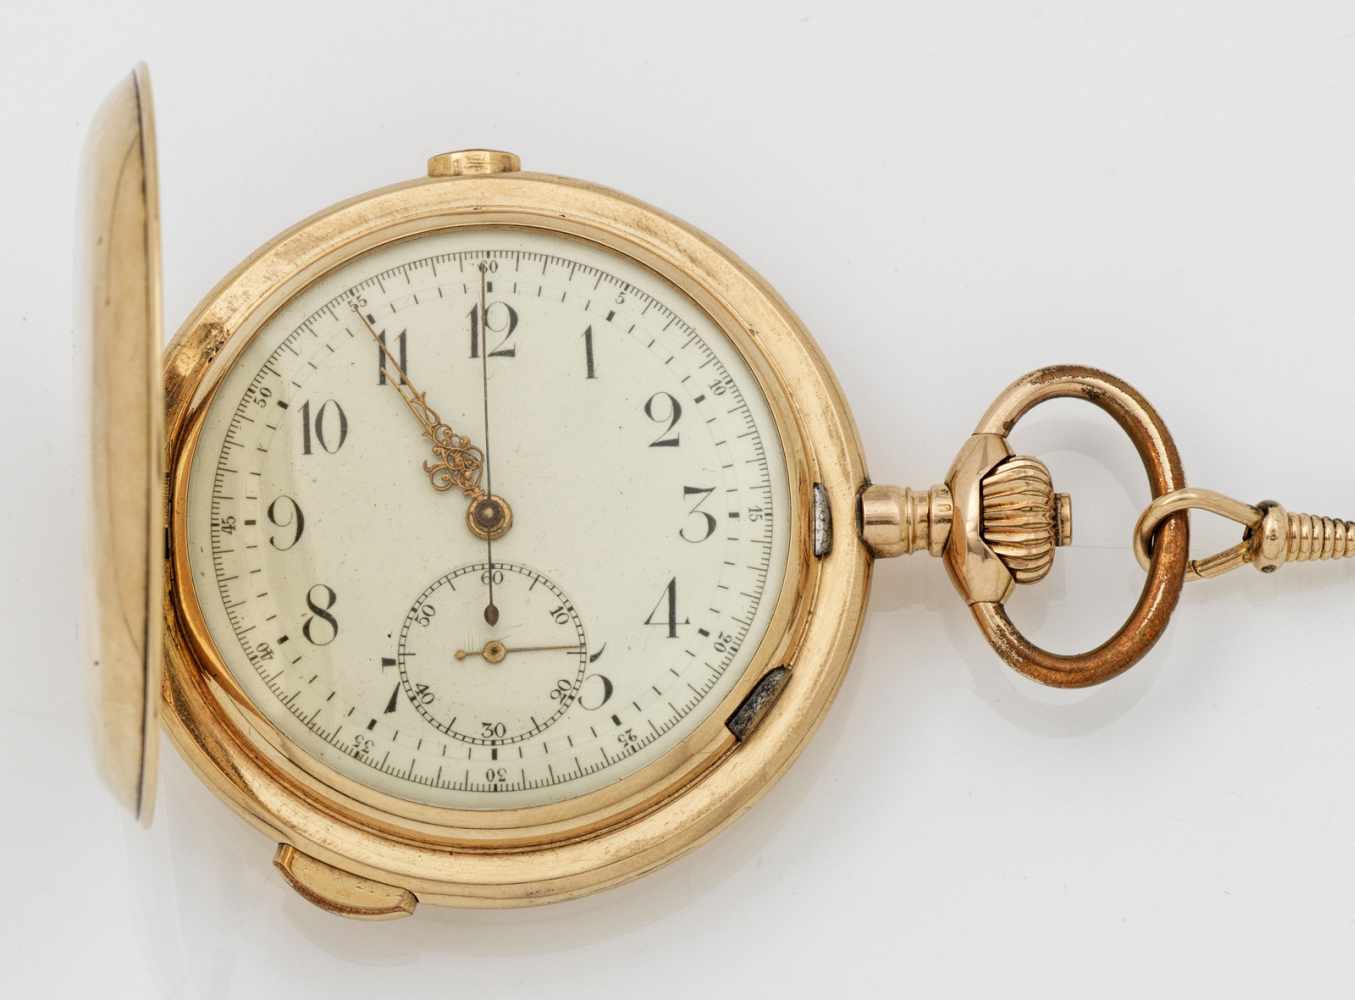 Goldsavonette-Taschenuhr mit 1/4-Stunden RepetitionswerkUm 1900. Gelbgold, gest. 585. Dreideckel-